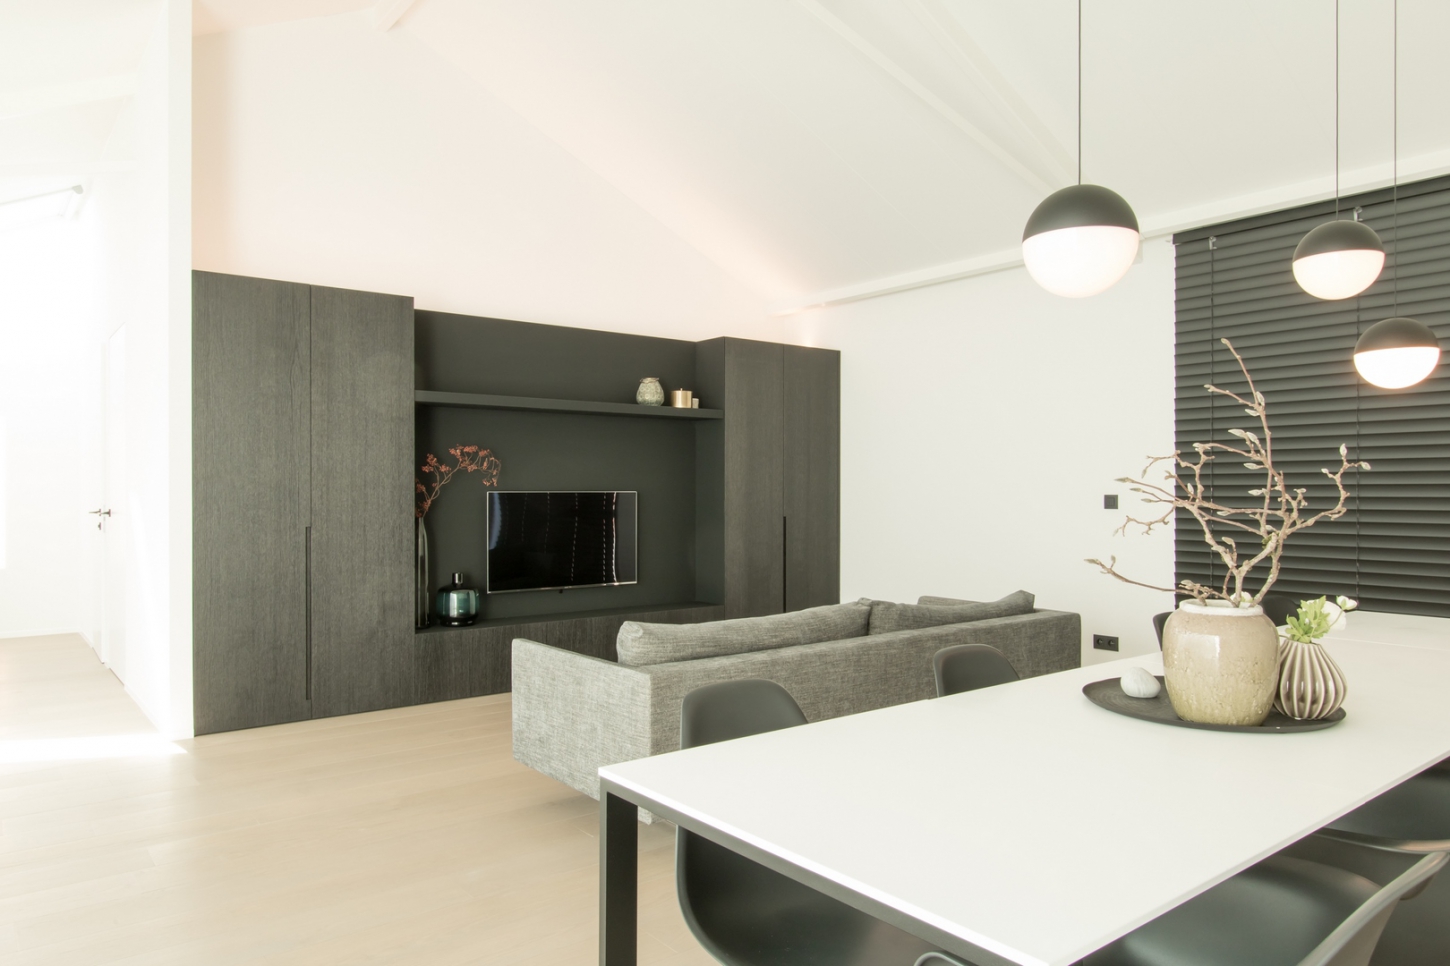 Totaalprojecten voor uw interieur zijn de absolute expertise van Casa Vero. 